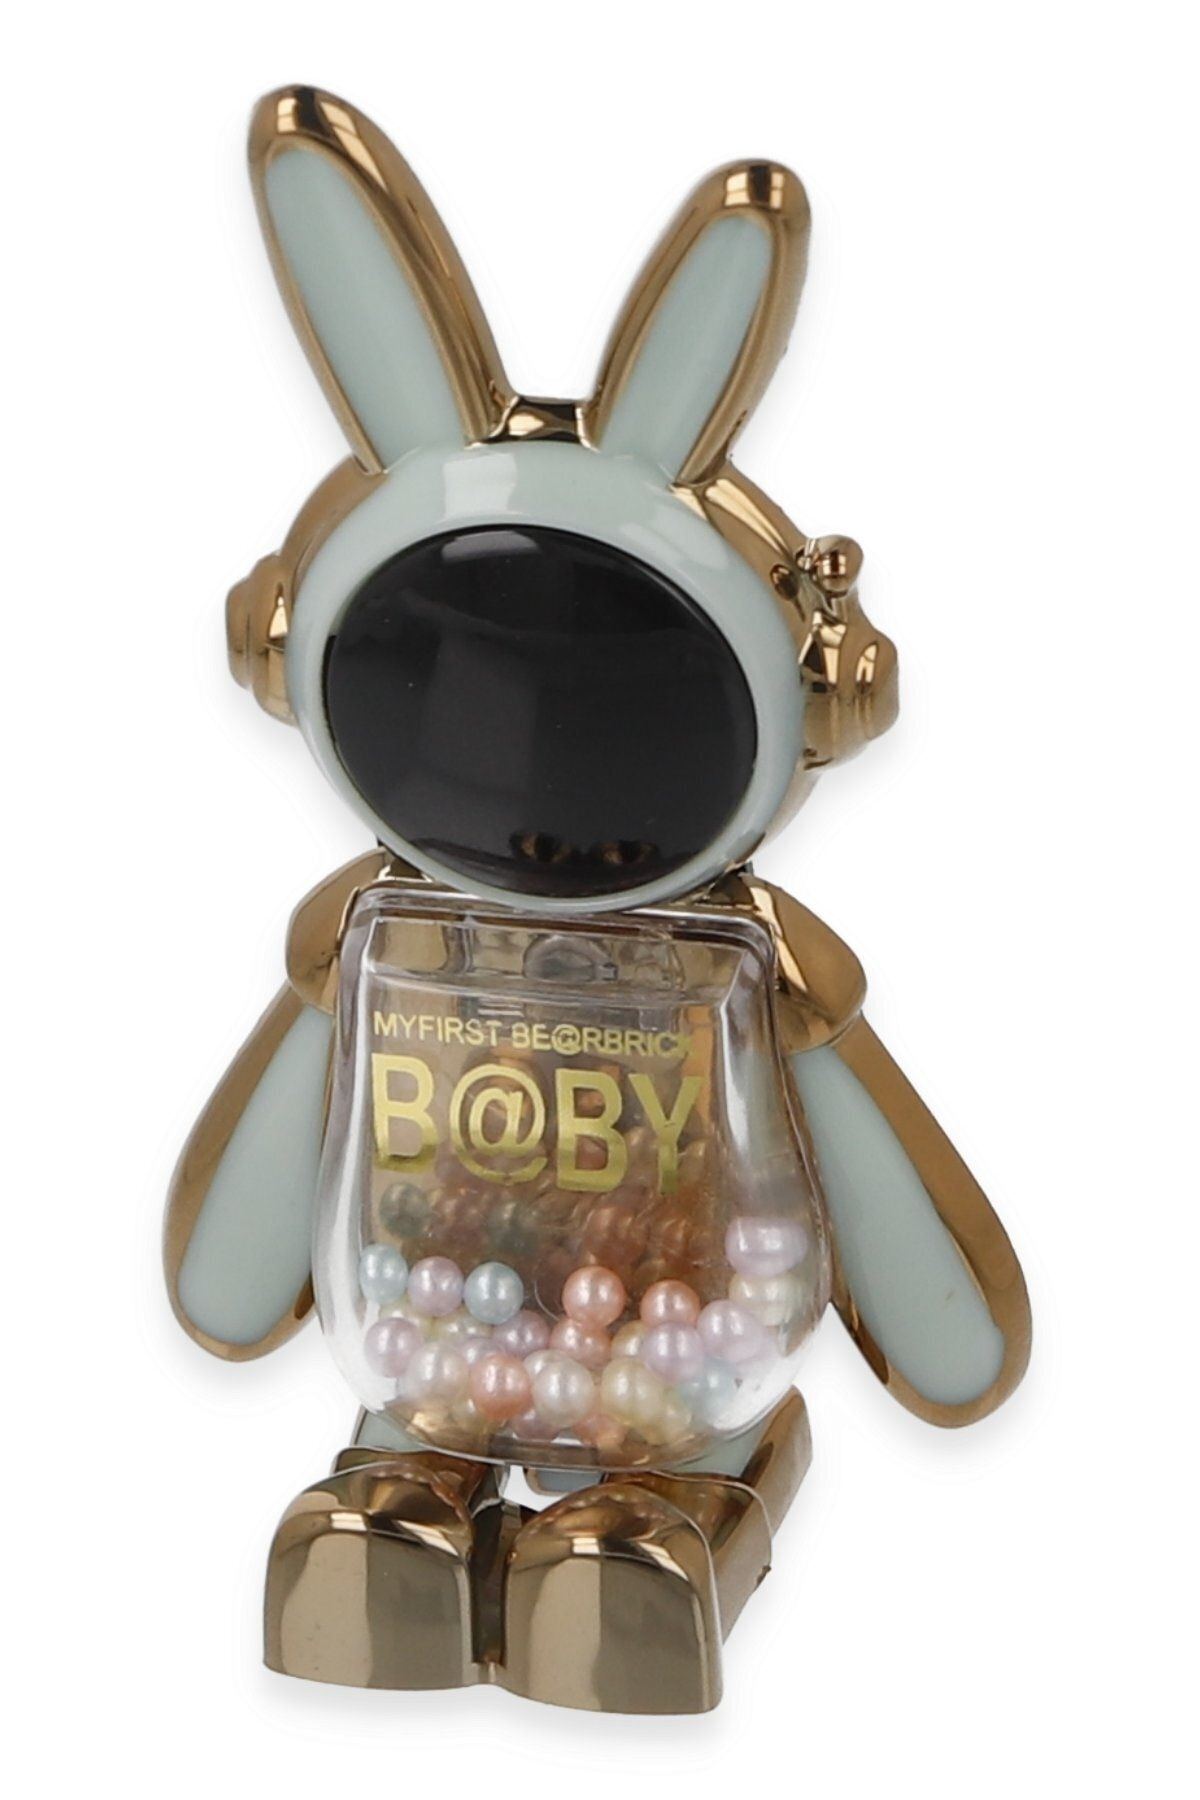 TEKNETSTORE Masa Üstü Sevimli Tavşan Standı Telefon Tutucu Yapışkan Kılıfa Yapıştırılır Boncuklu Astronot Tutucu